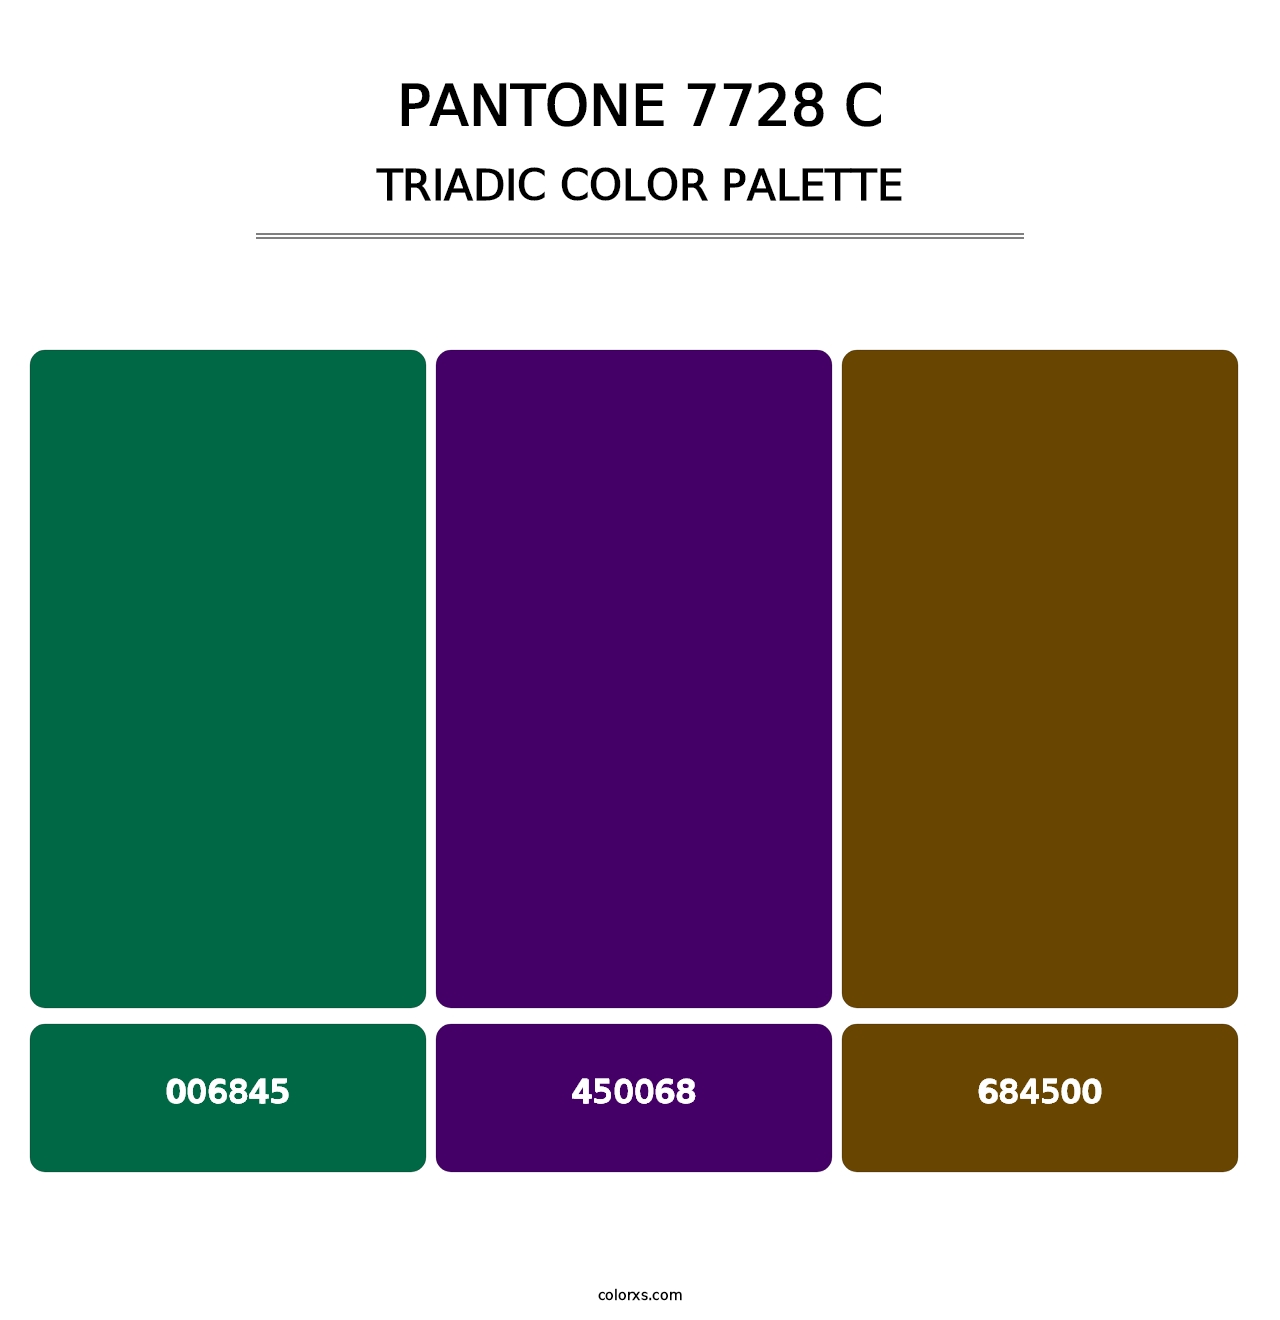 PANTONE 7728 C - Triadic Color Palette